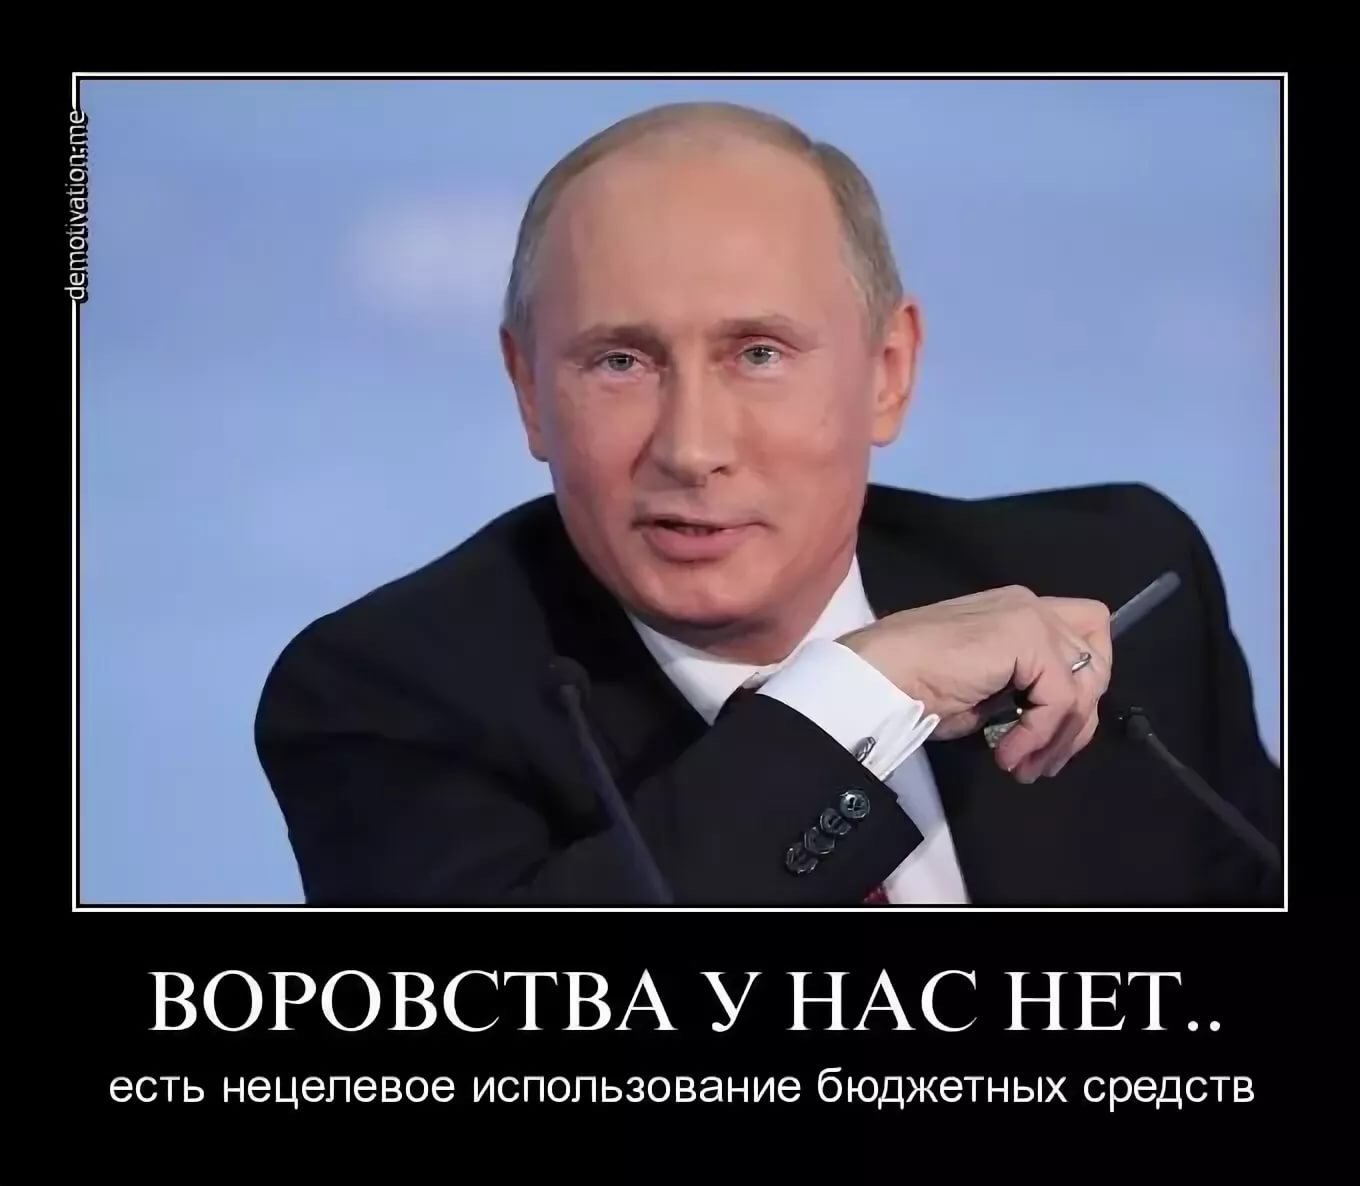 Где теперь будет работать. В России воруют. Демотиваторы против Путина. Мемы про Путина.